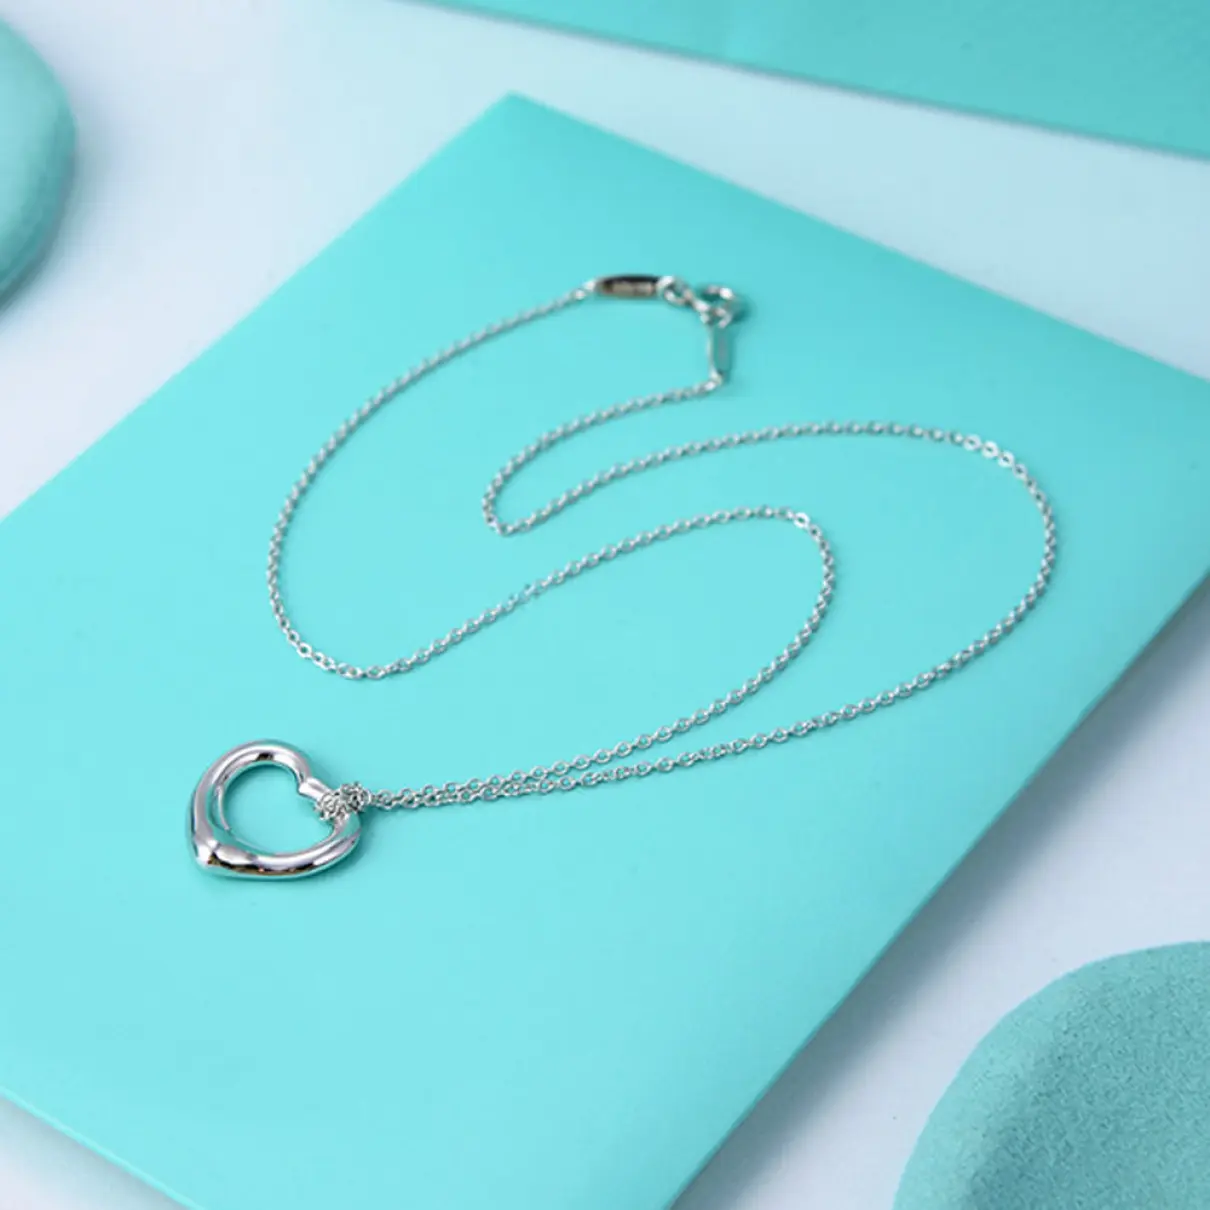 Buy Tiffany & Co Open Heart necklace online